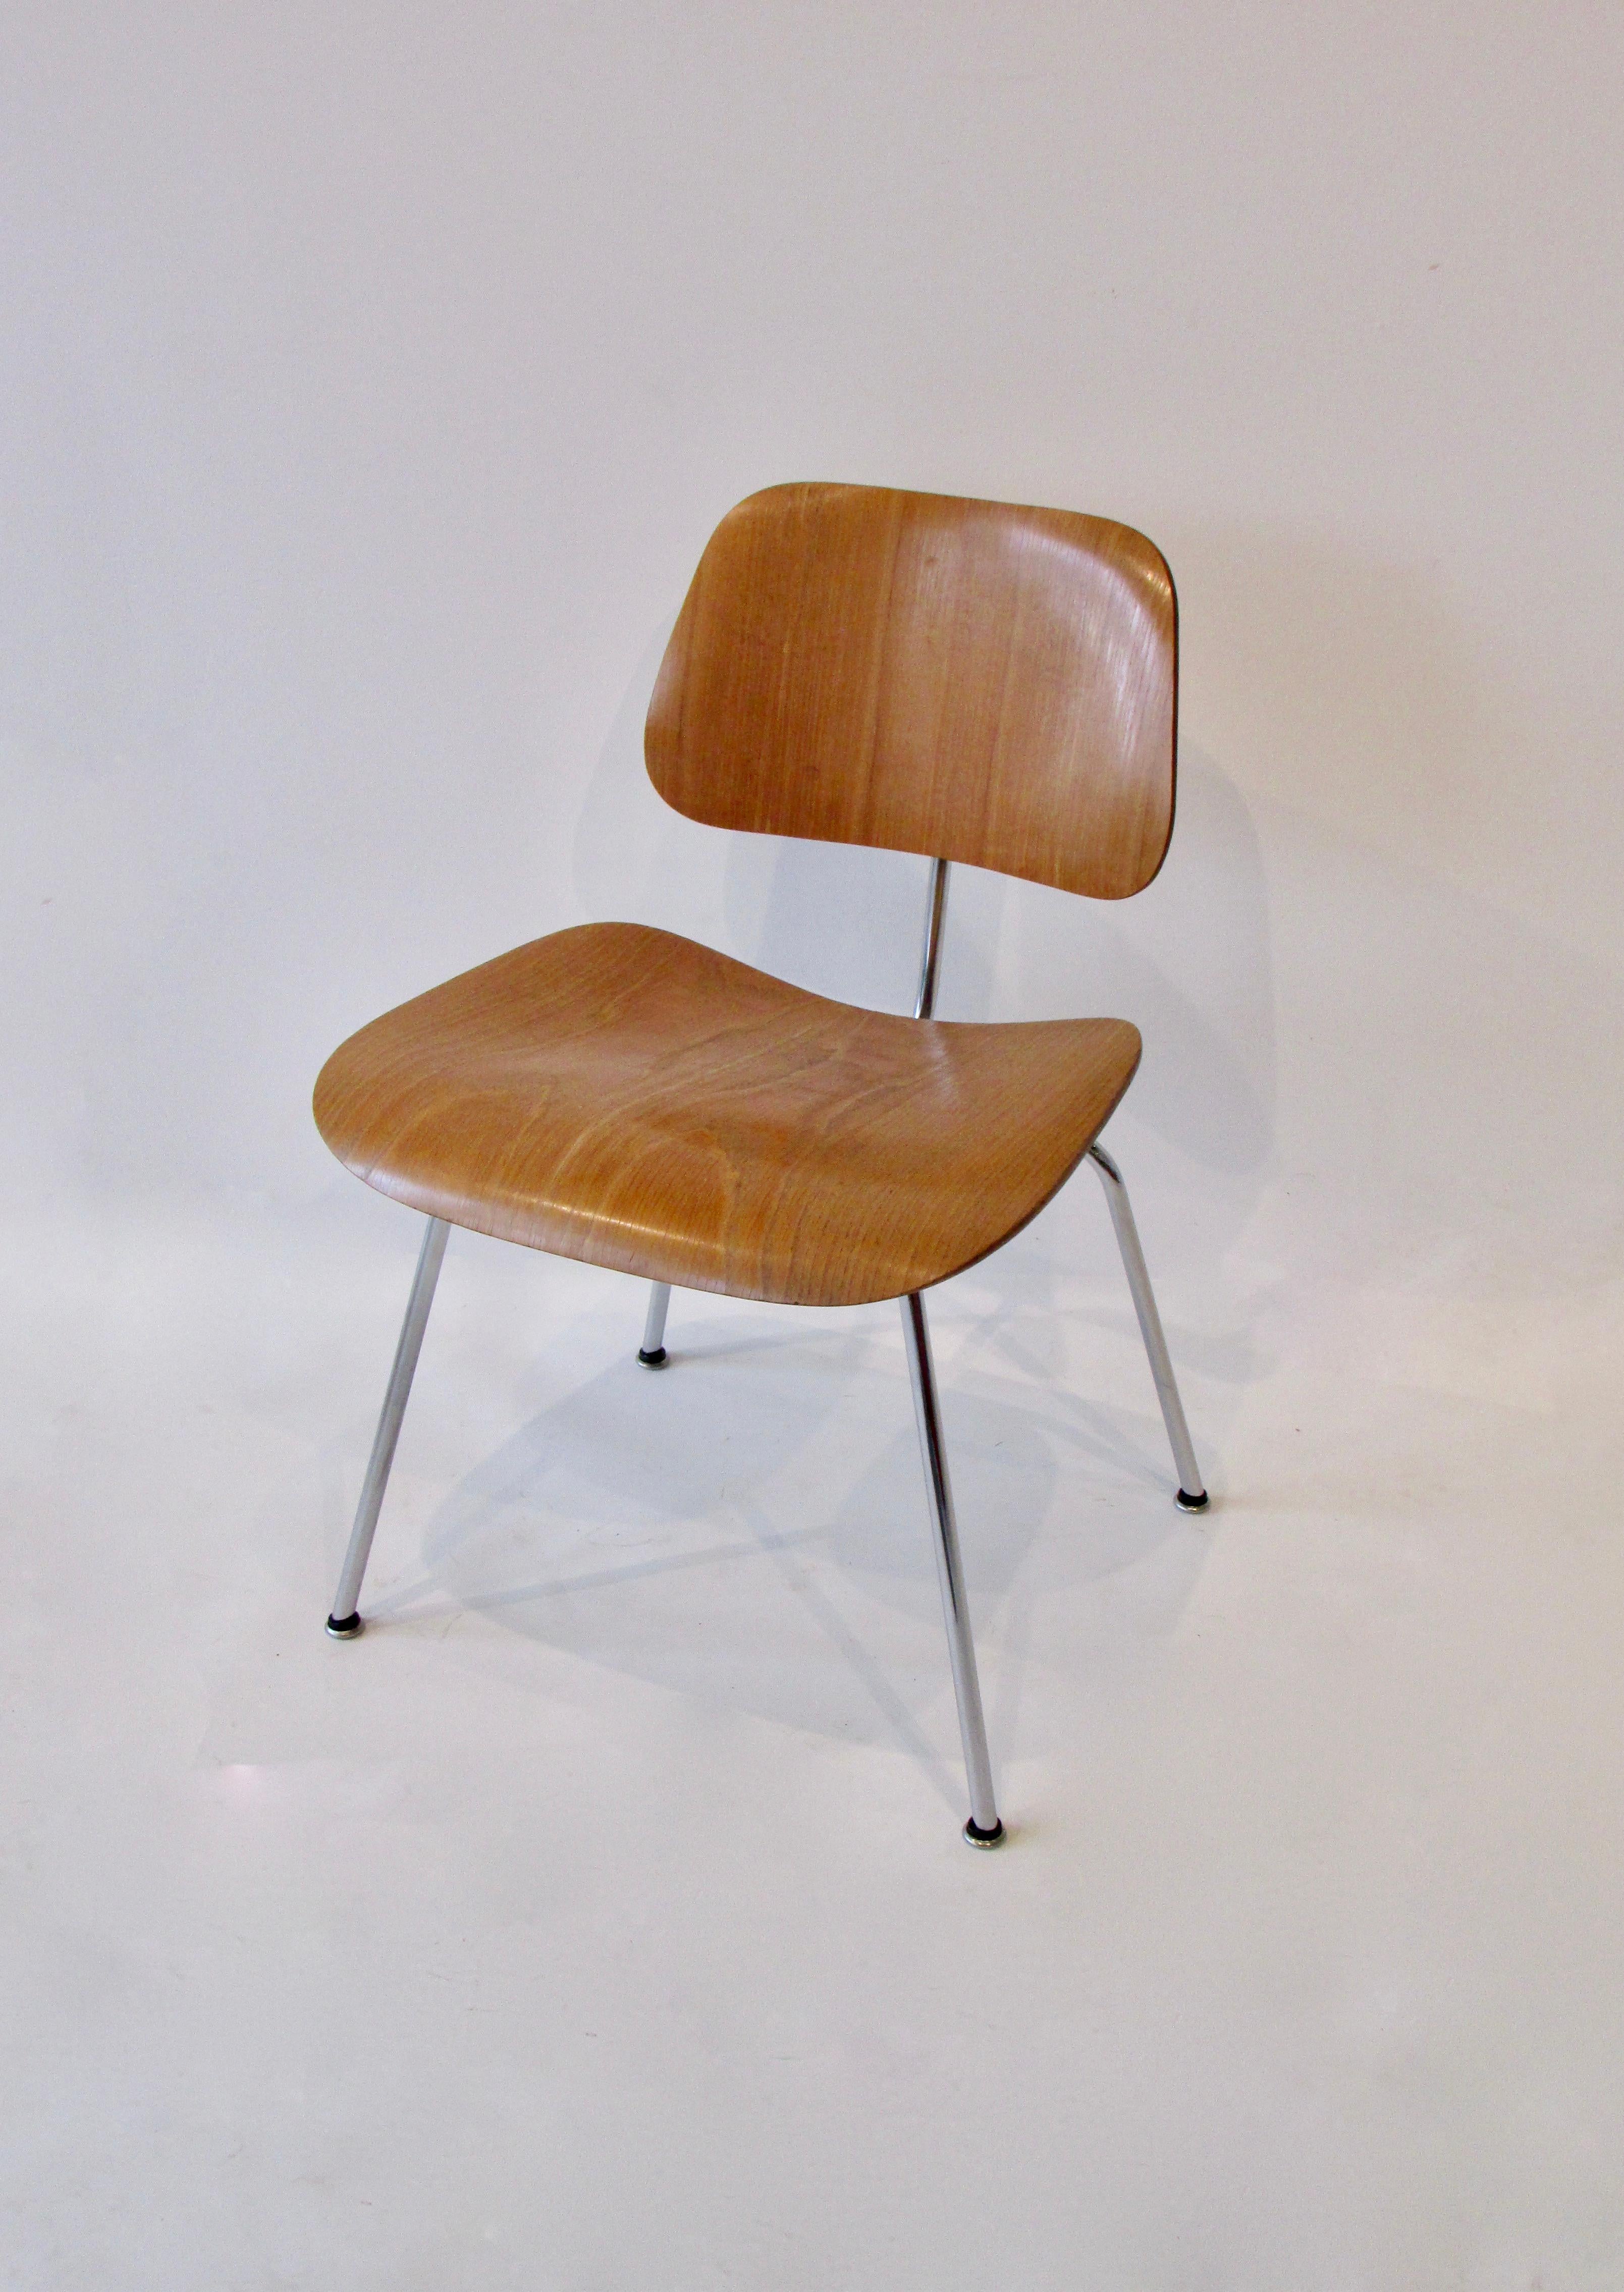 Silla de comedor de metal (DCM ) diseñada por Charles and Ray Eames, muy bonita y de producción temprana. La limpia estructura cromada soporta el asiento y el respaldo de fresno veteado. Conserva la etiqueta original de la calcomanía al agua Eames